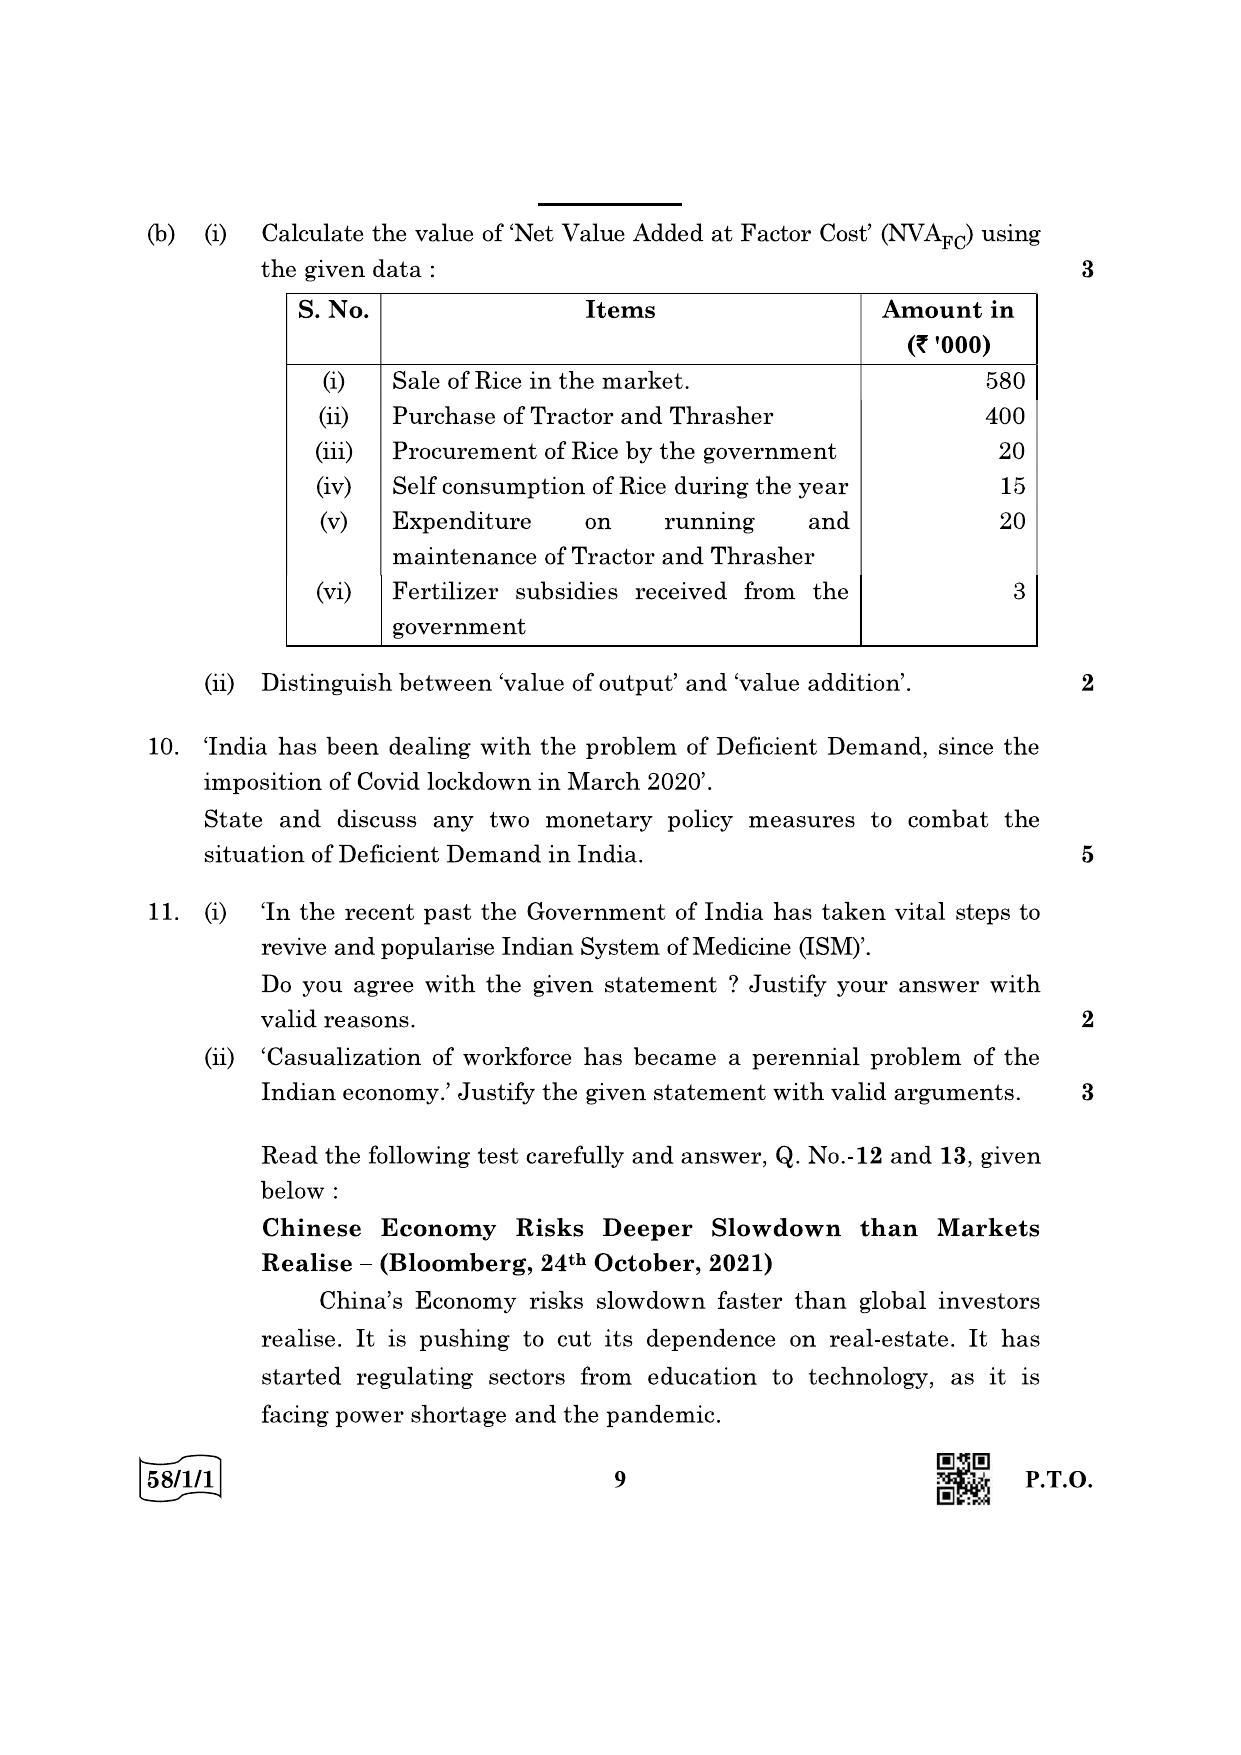 CBSE Class 12 58-1-1 Economics 2022 Question Paper - Page 9